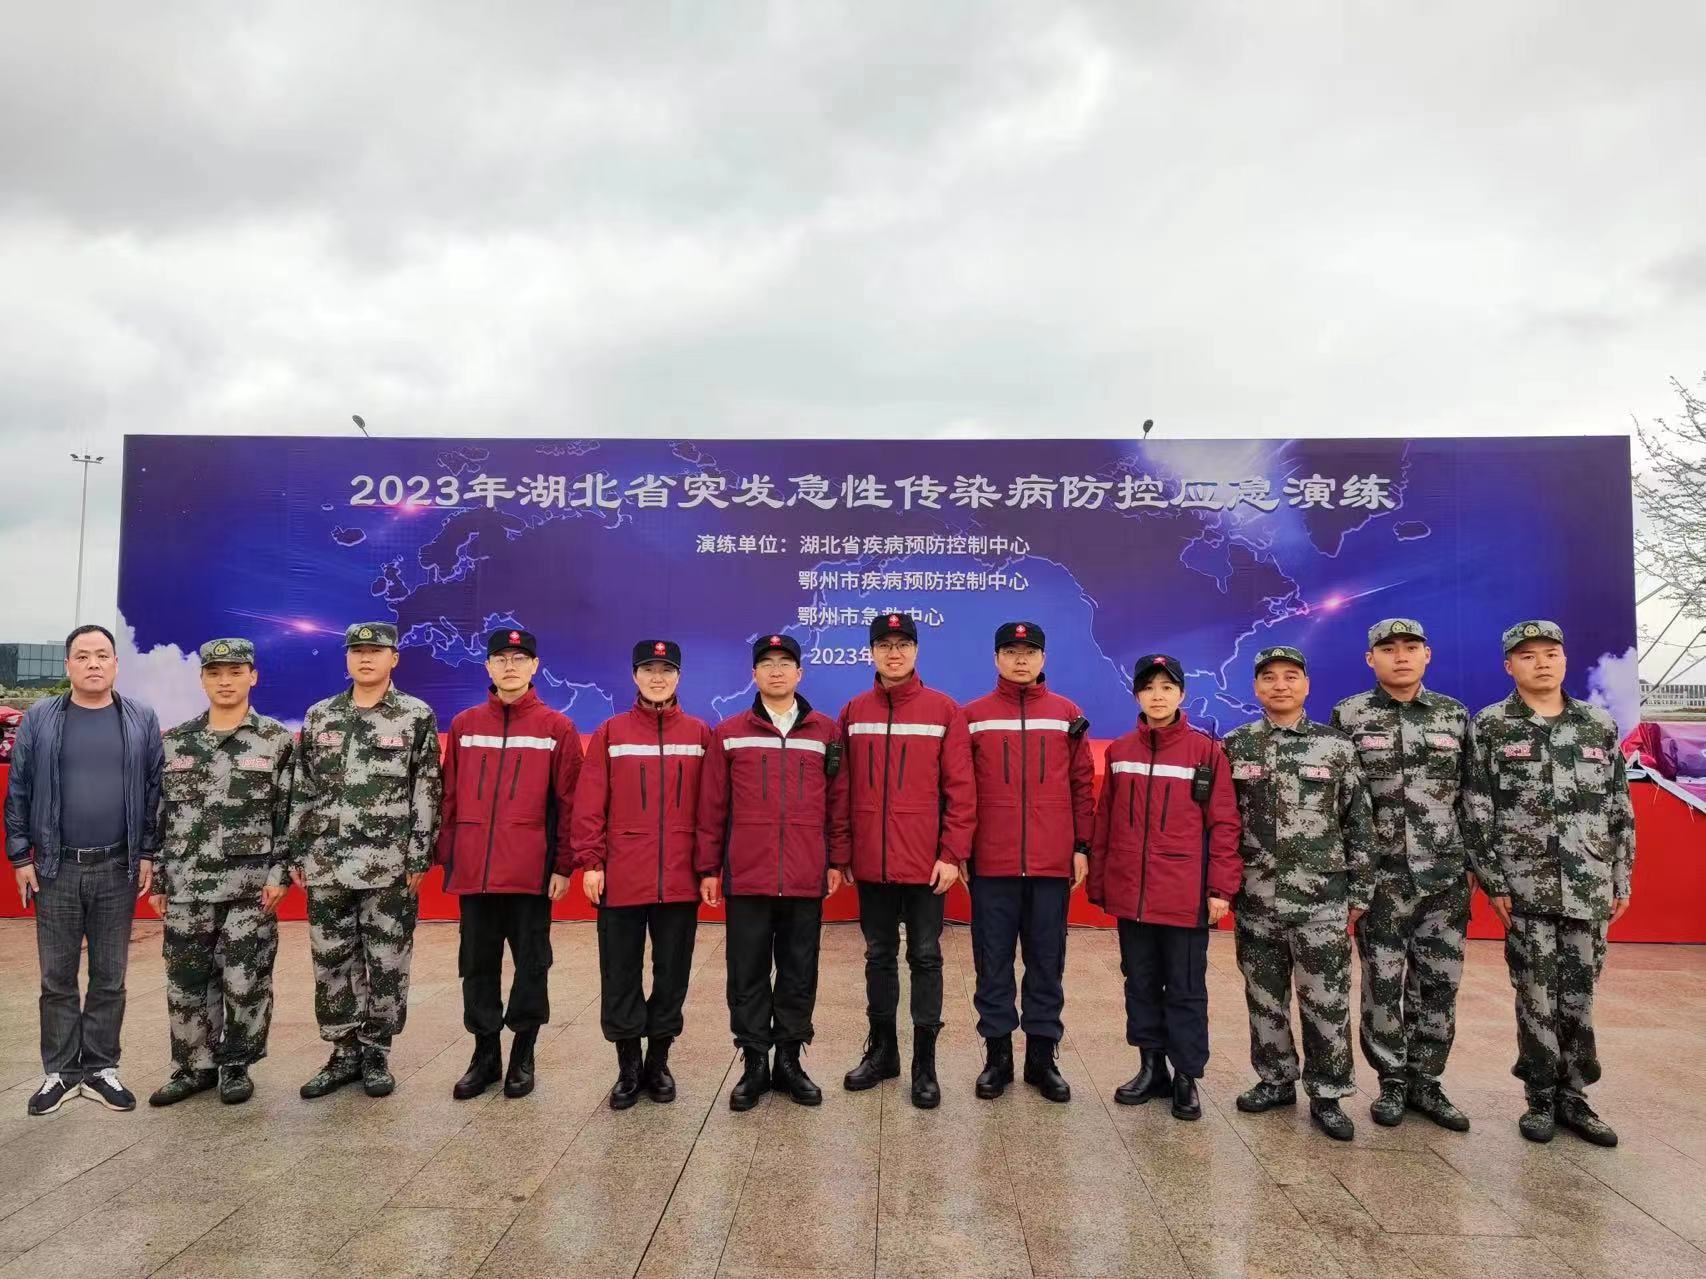 法人刘强带领强达生物参加2023年湖北省突发急性传染病防控应急演练